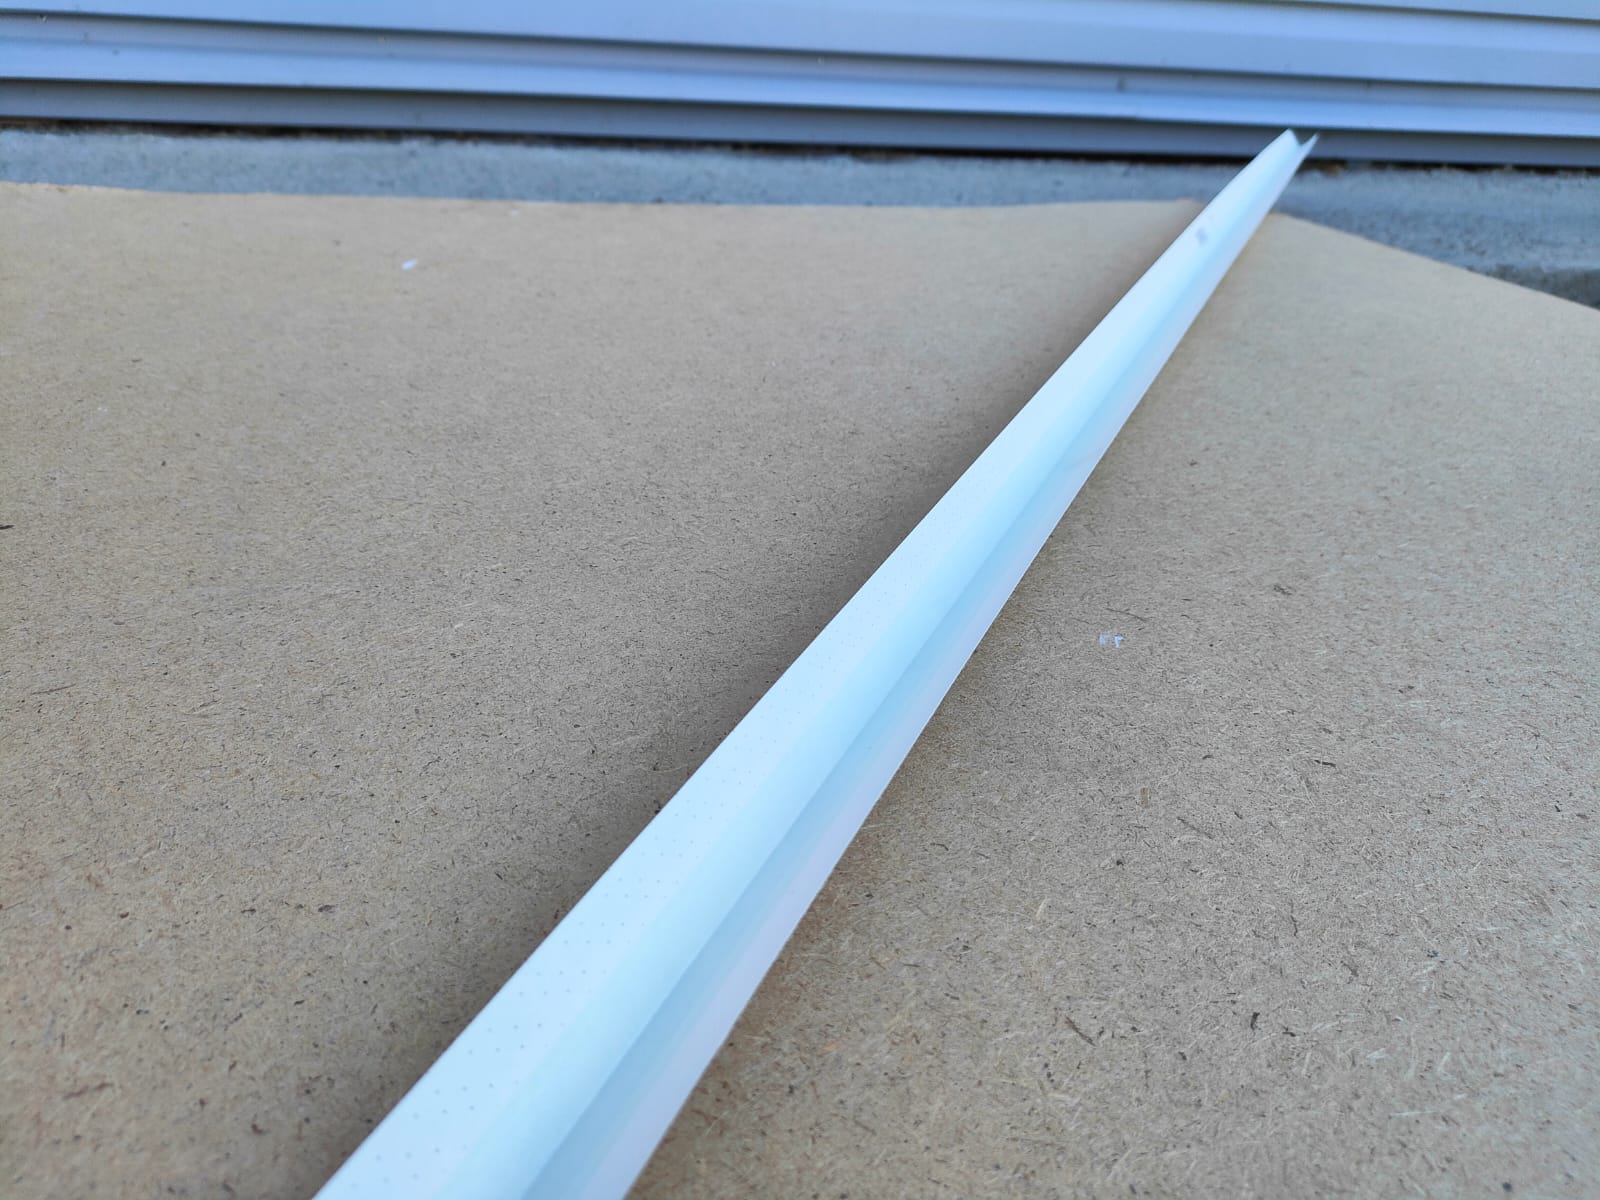 Металлизированный уголок sheetrock (Шитрок) на бумажной основе для внутренних углов 3,05 м								